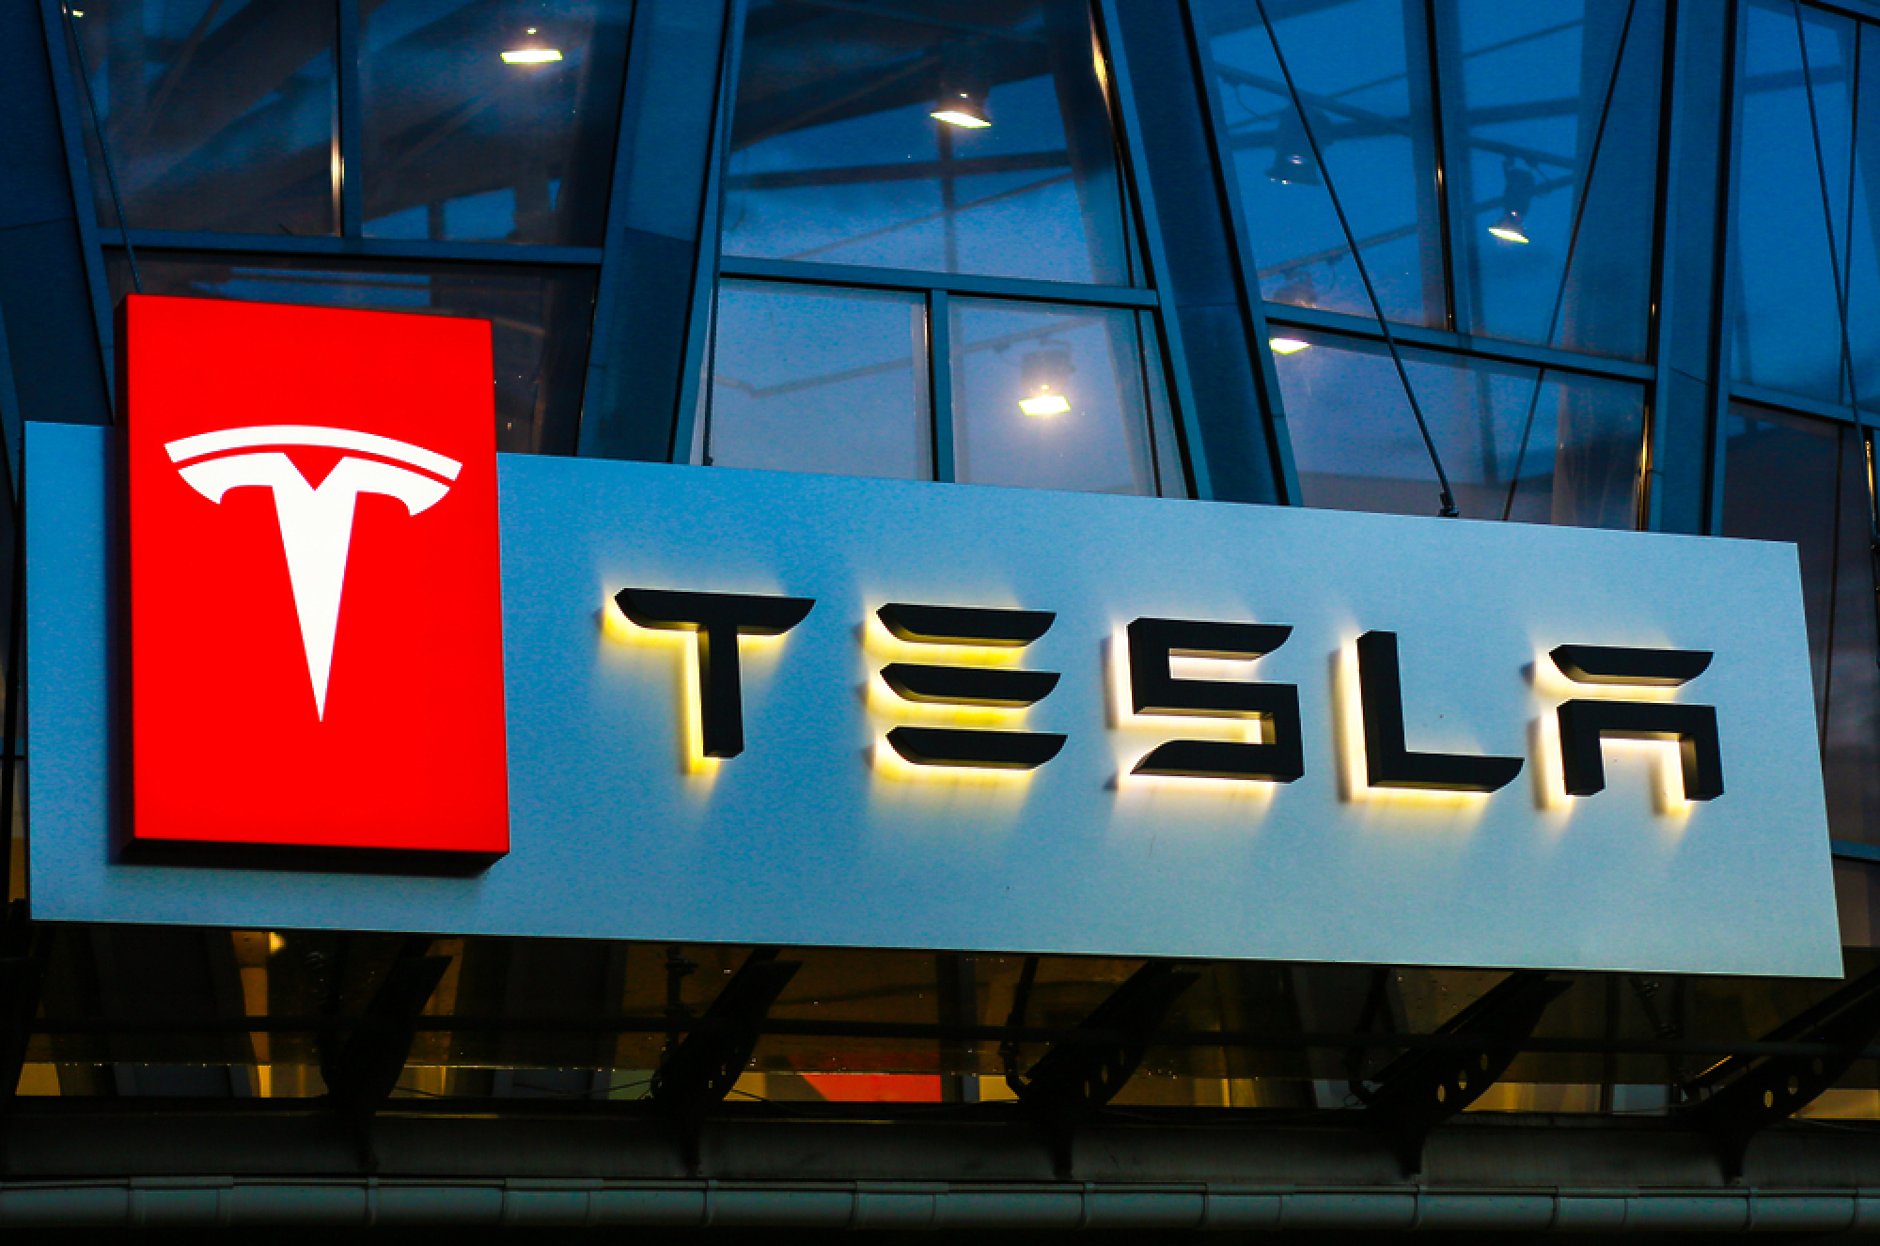 Tesla увеличи над два пъти доставките на електромобили от завода си в Китай